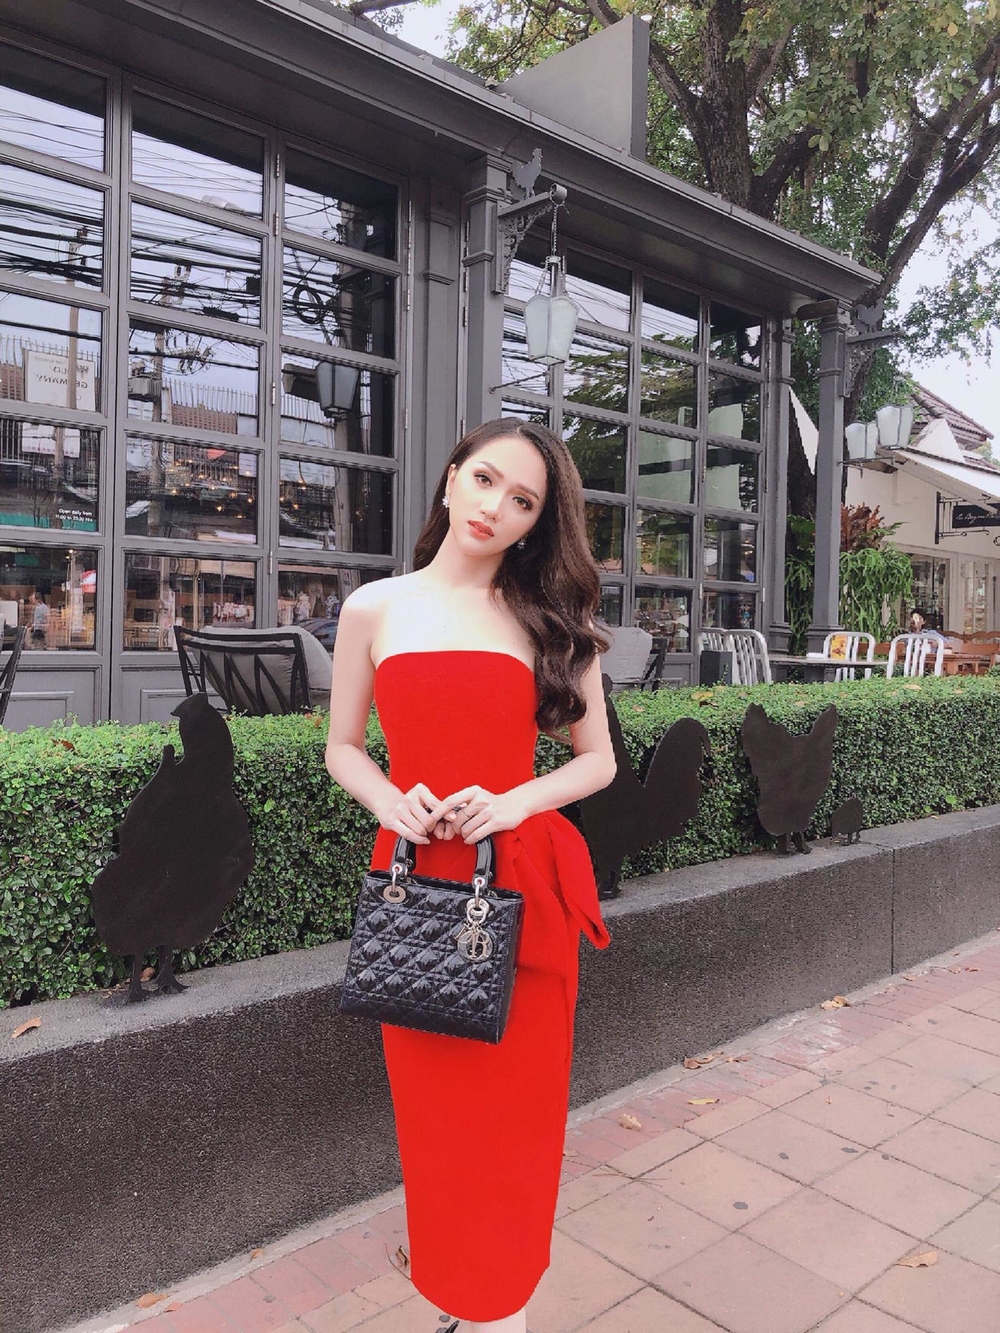 Hoa hậu Hương Giang diện váy trễ nải, đeo trang sức hơn 1 tỷ đồng dự sự kiện